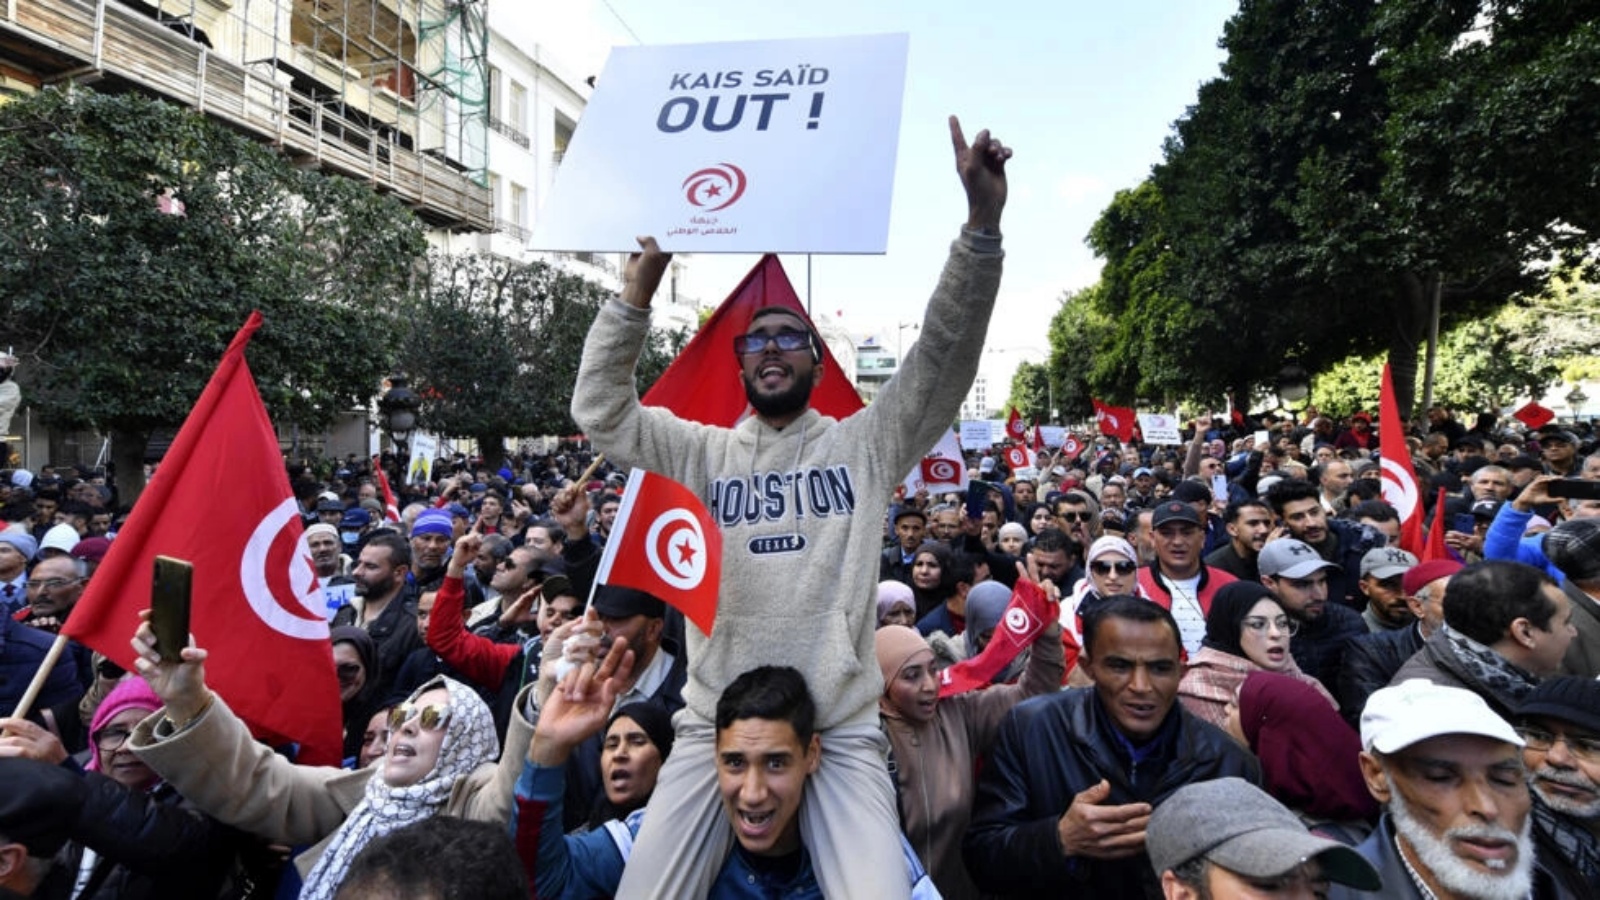 صورة مؤرخة في 14 يناير 2023 من تظاهرة ضد الرئيس التونسي قيس سعيد في تونس